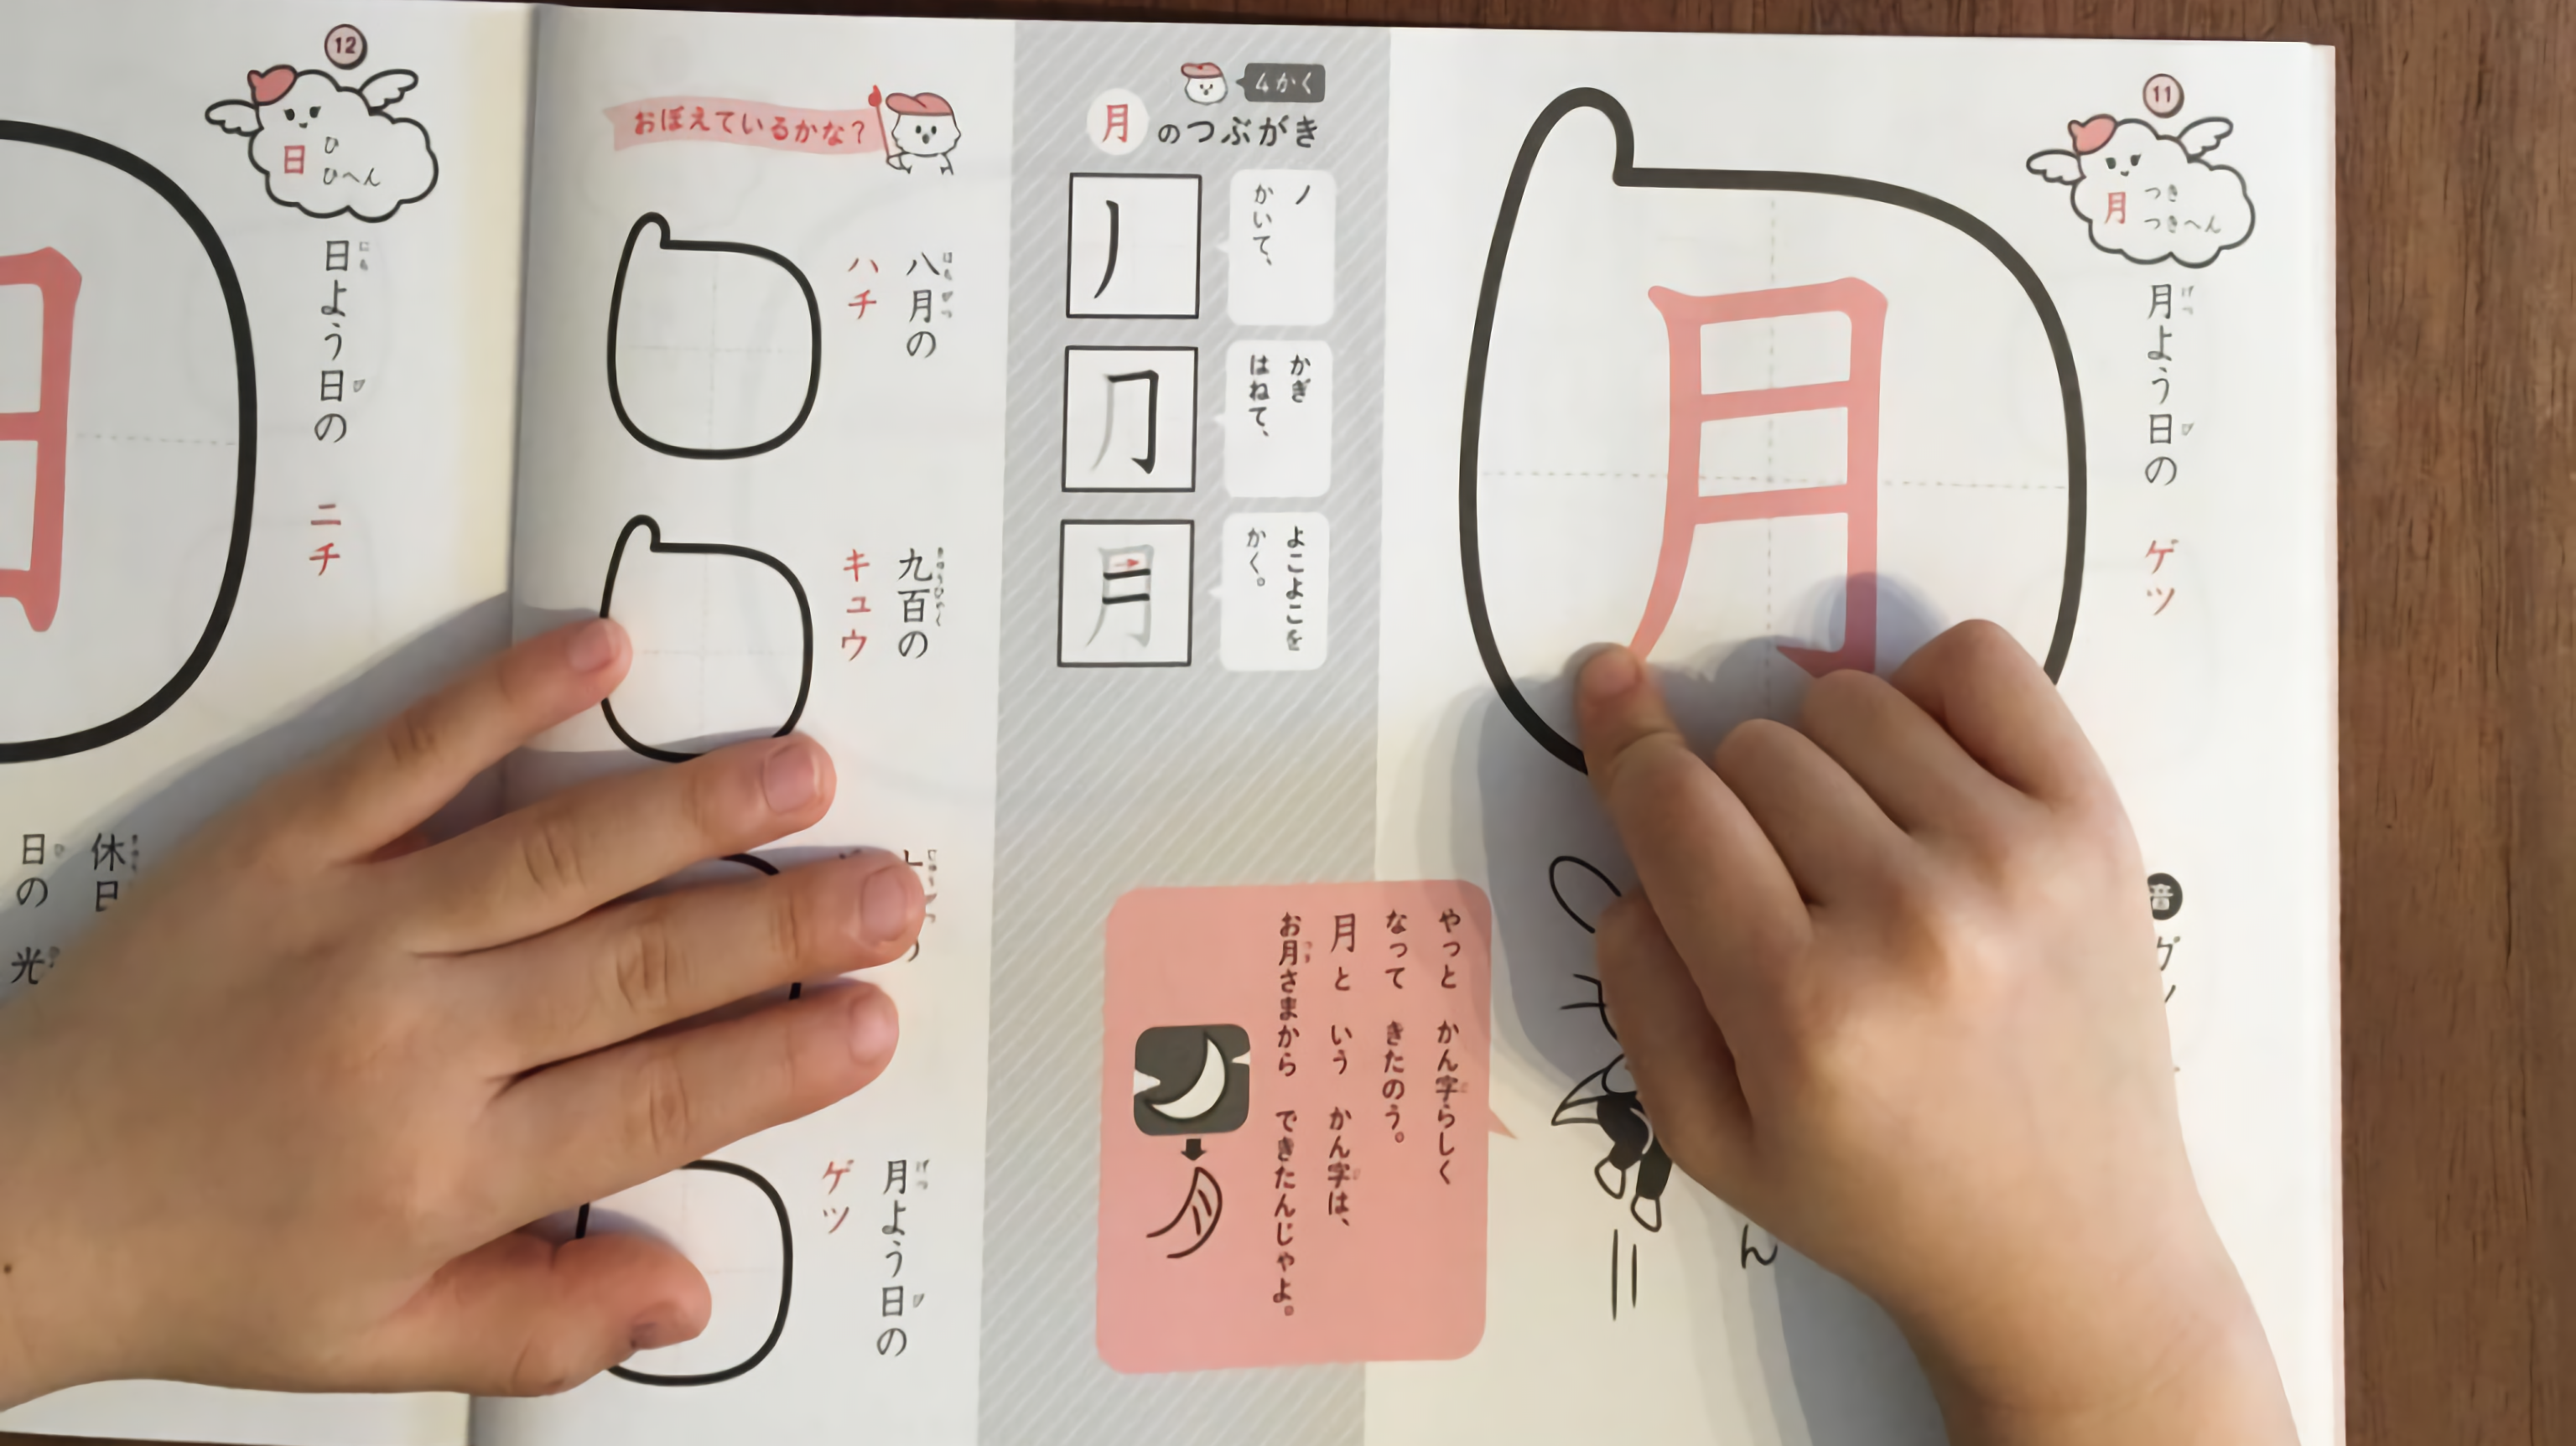 注目の漢字学習法 つぶやき漢字 速く確実に覚えられる みんなの教育技術